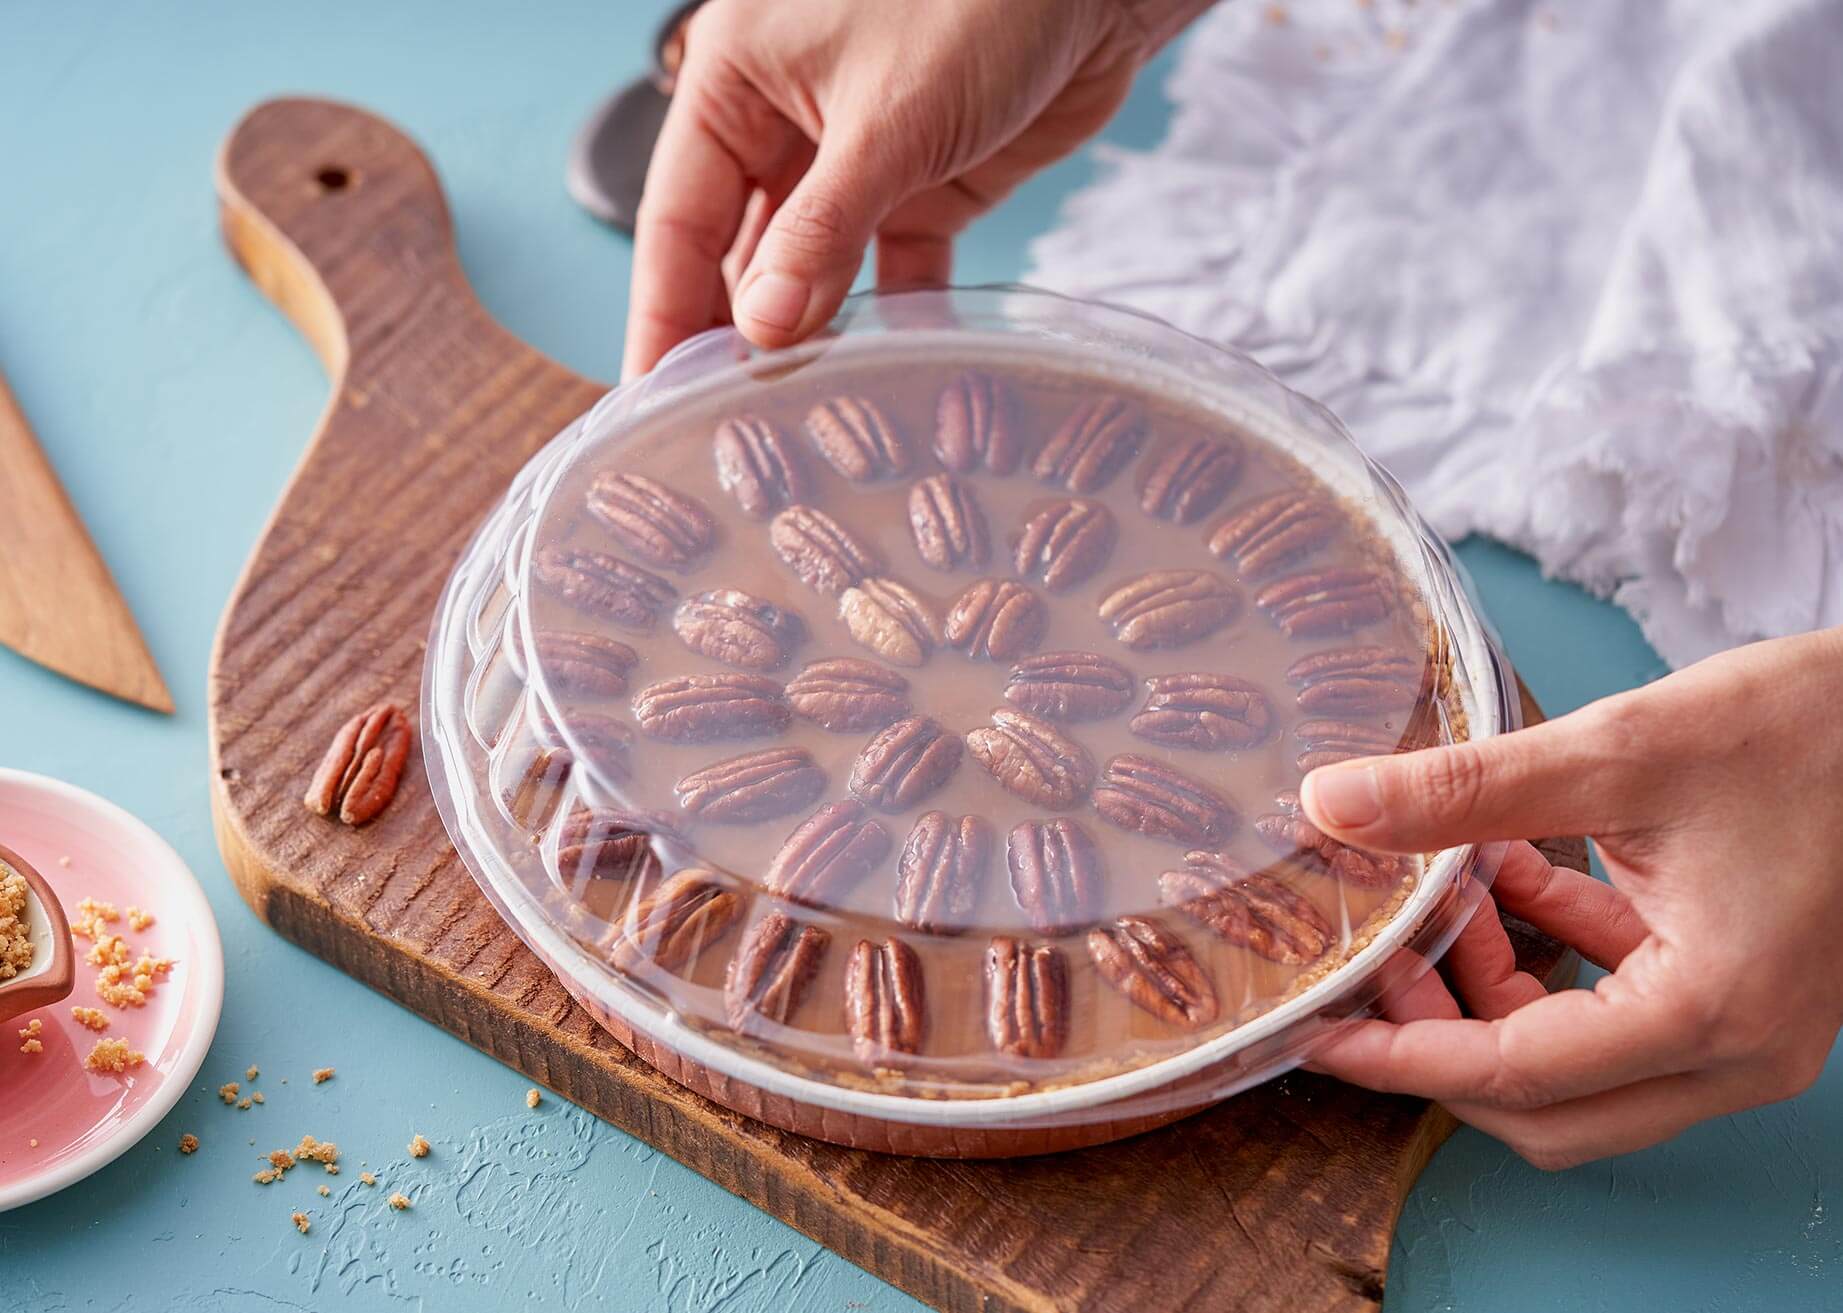 pecan pie in novacart optima mold with pet lid